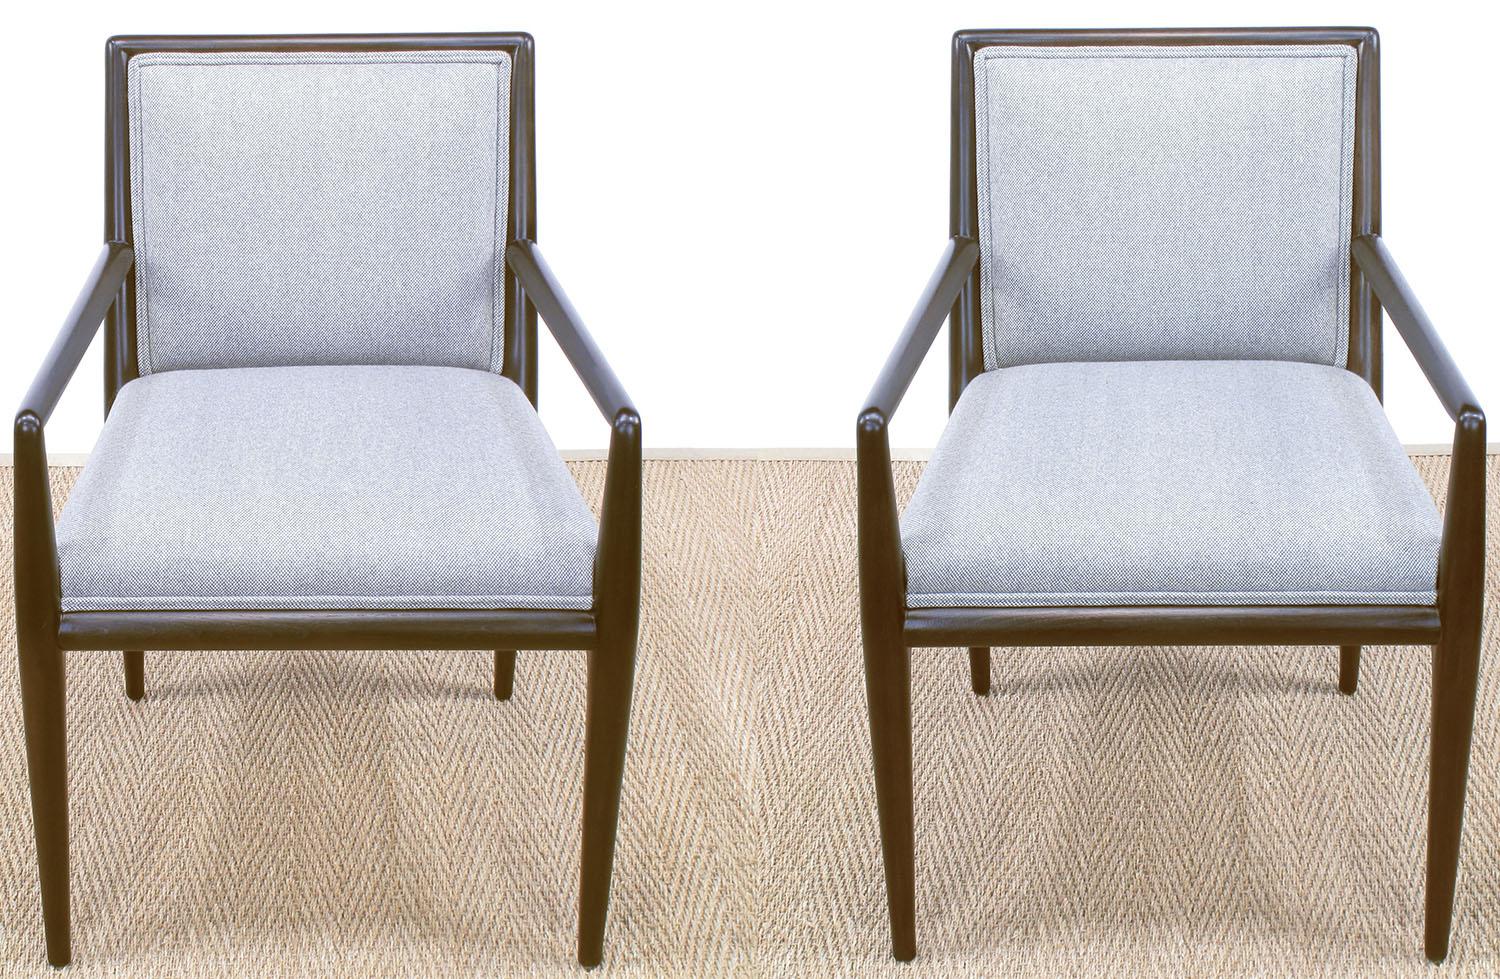 Zwei fachmännisch restaurierte, gepolsterte Sessel, entworfen von T. H. Robsjohn-Gibbings für Widdicomb. Holland & Sherry-Polsterung aus Wolle in einem grauen und weißen, sehr kleinen Schachbrettmuster. Satinierte Oberfläche der dunklen